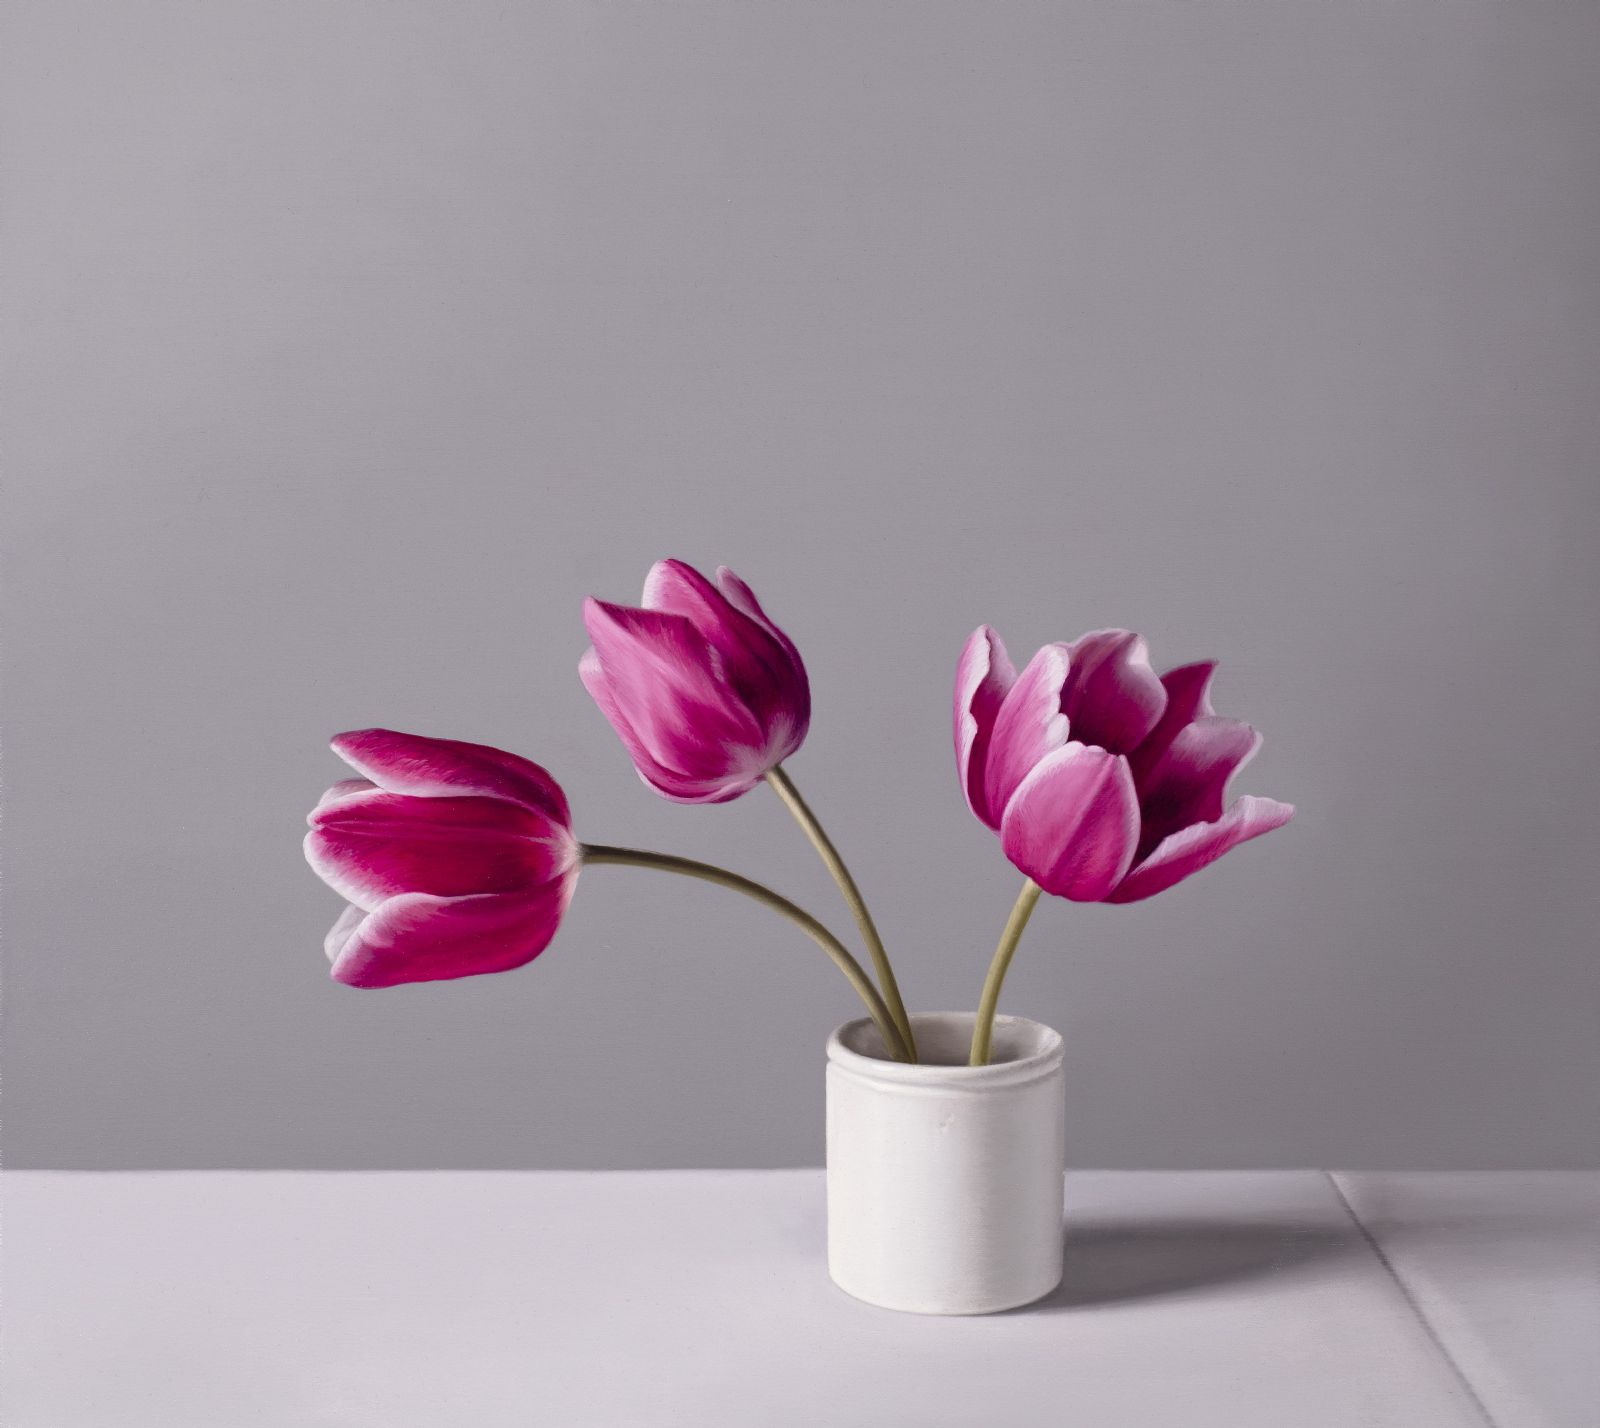 Jo Barrett - Still Life with Pink Tulips